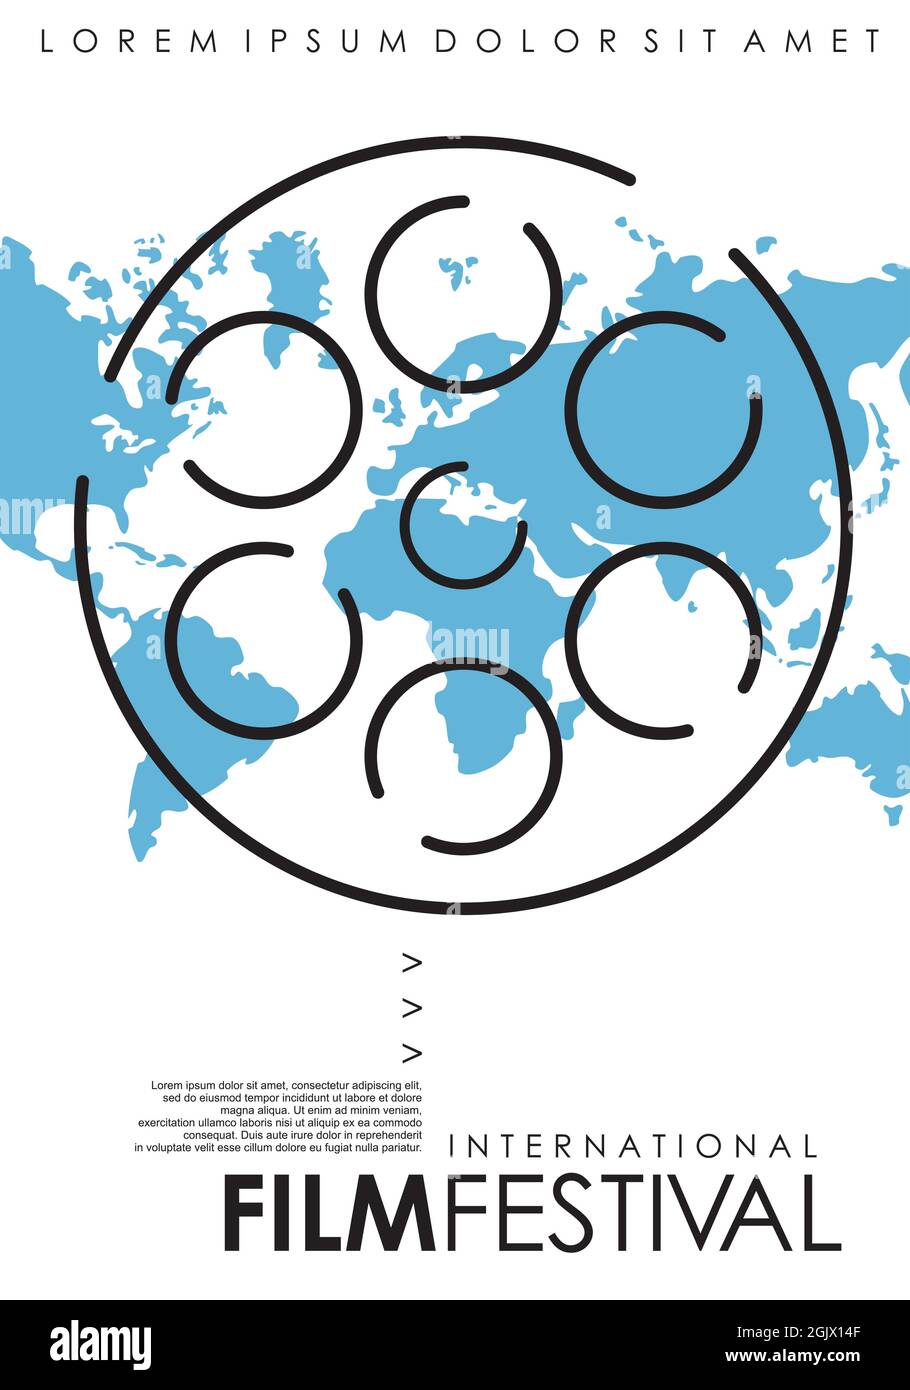 Festival Internazionale di film minimo poster design con line art film bobina e blu mappa del mondo. Concetto di modello di volantino per l'evento cinematografico Illustrazione Vettoriale